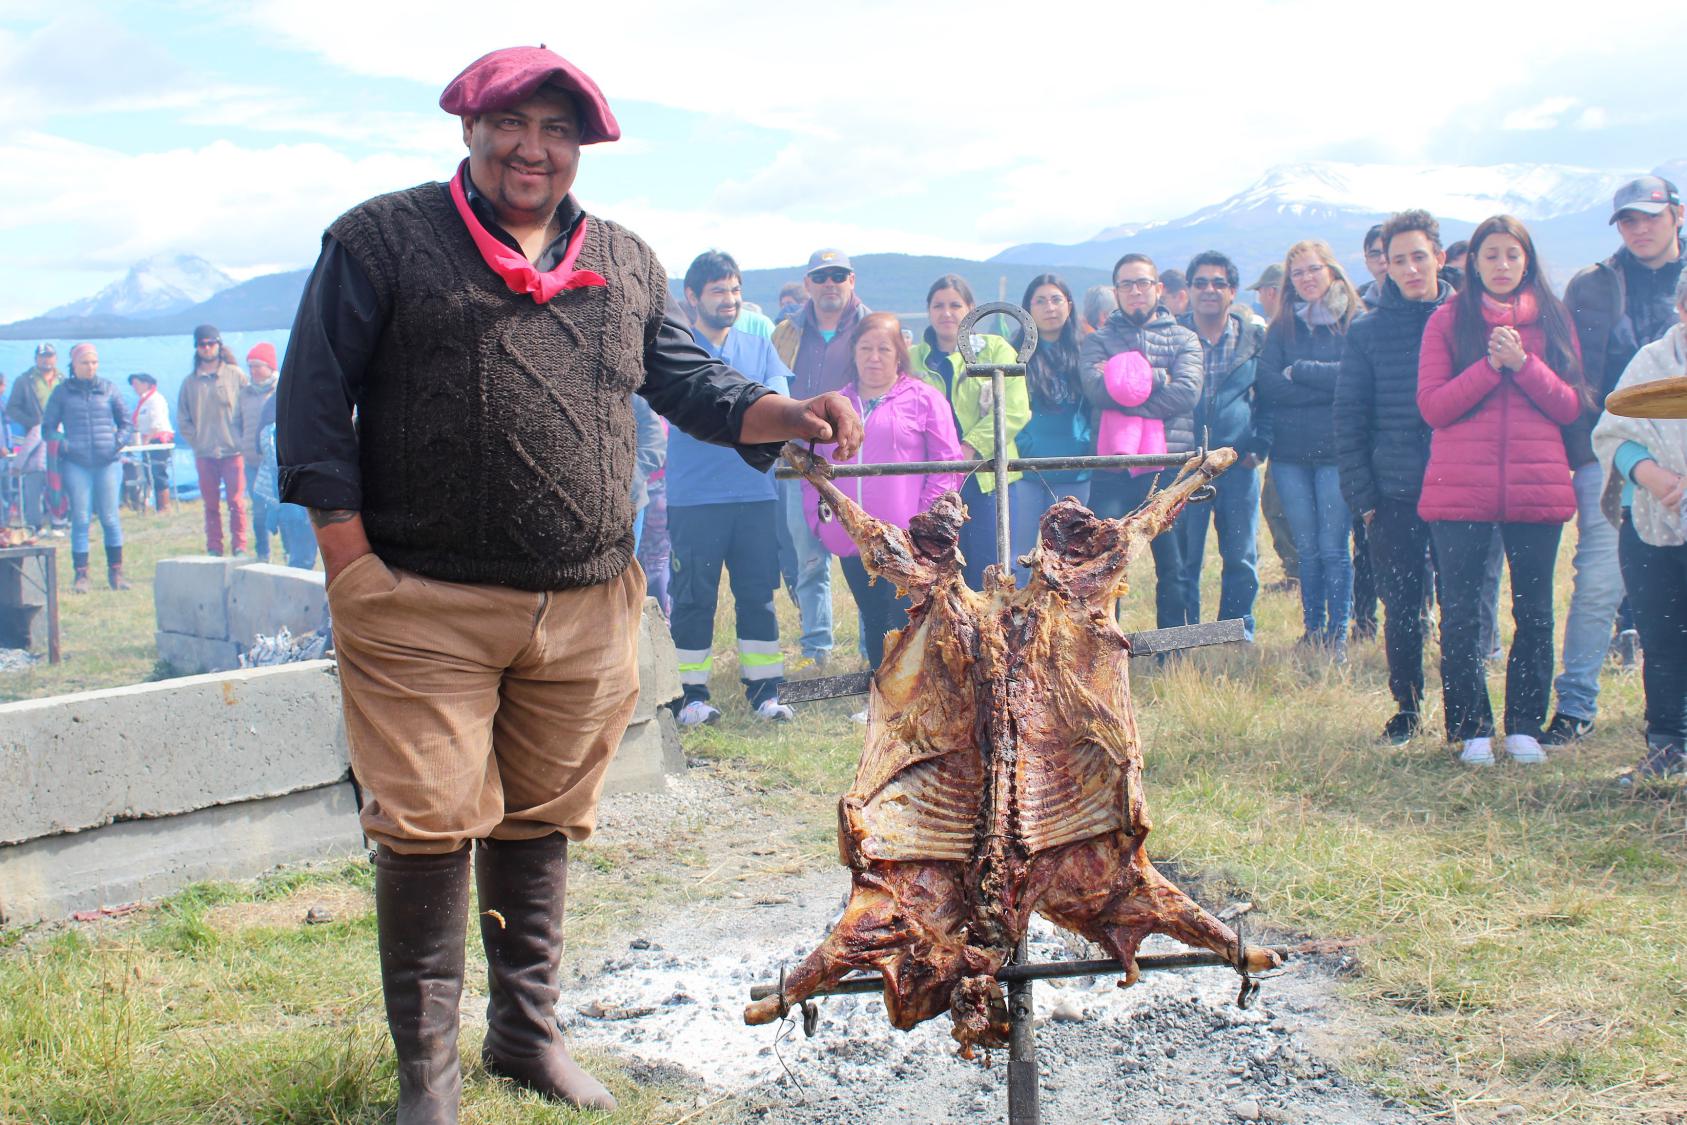 Se celebró la Fiesta del Cordero en Puerto Natales organizada por el Club de Jineteadas Rigor y Coraje